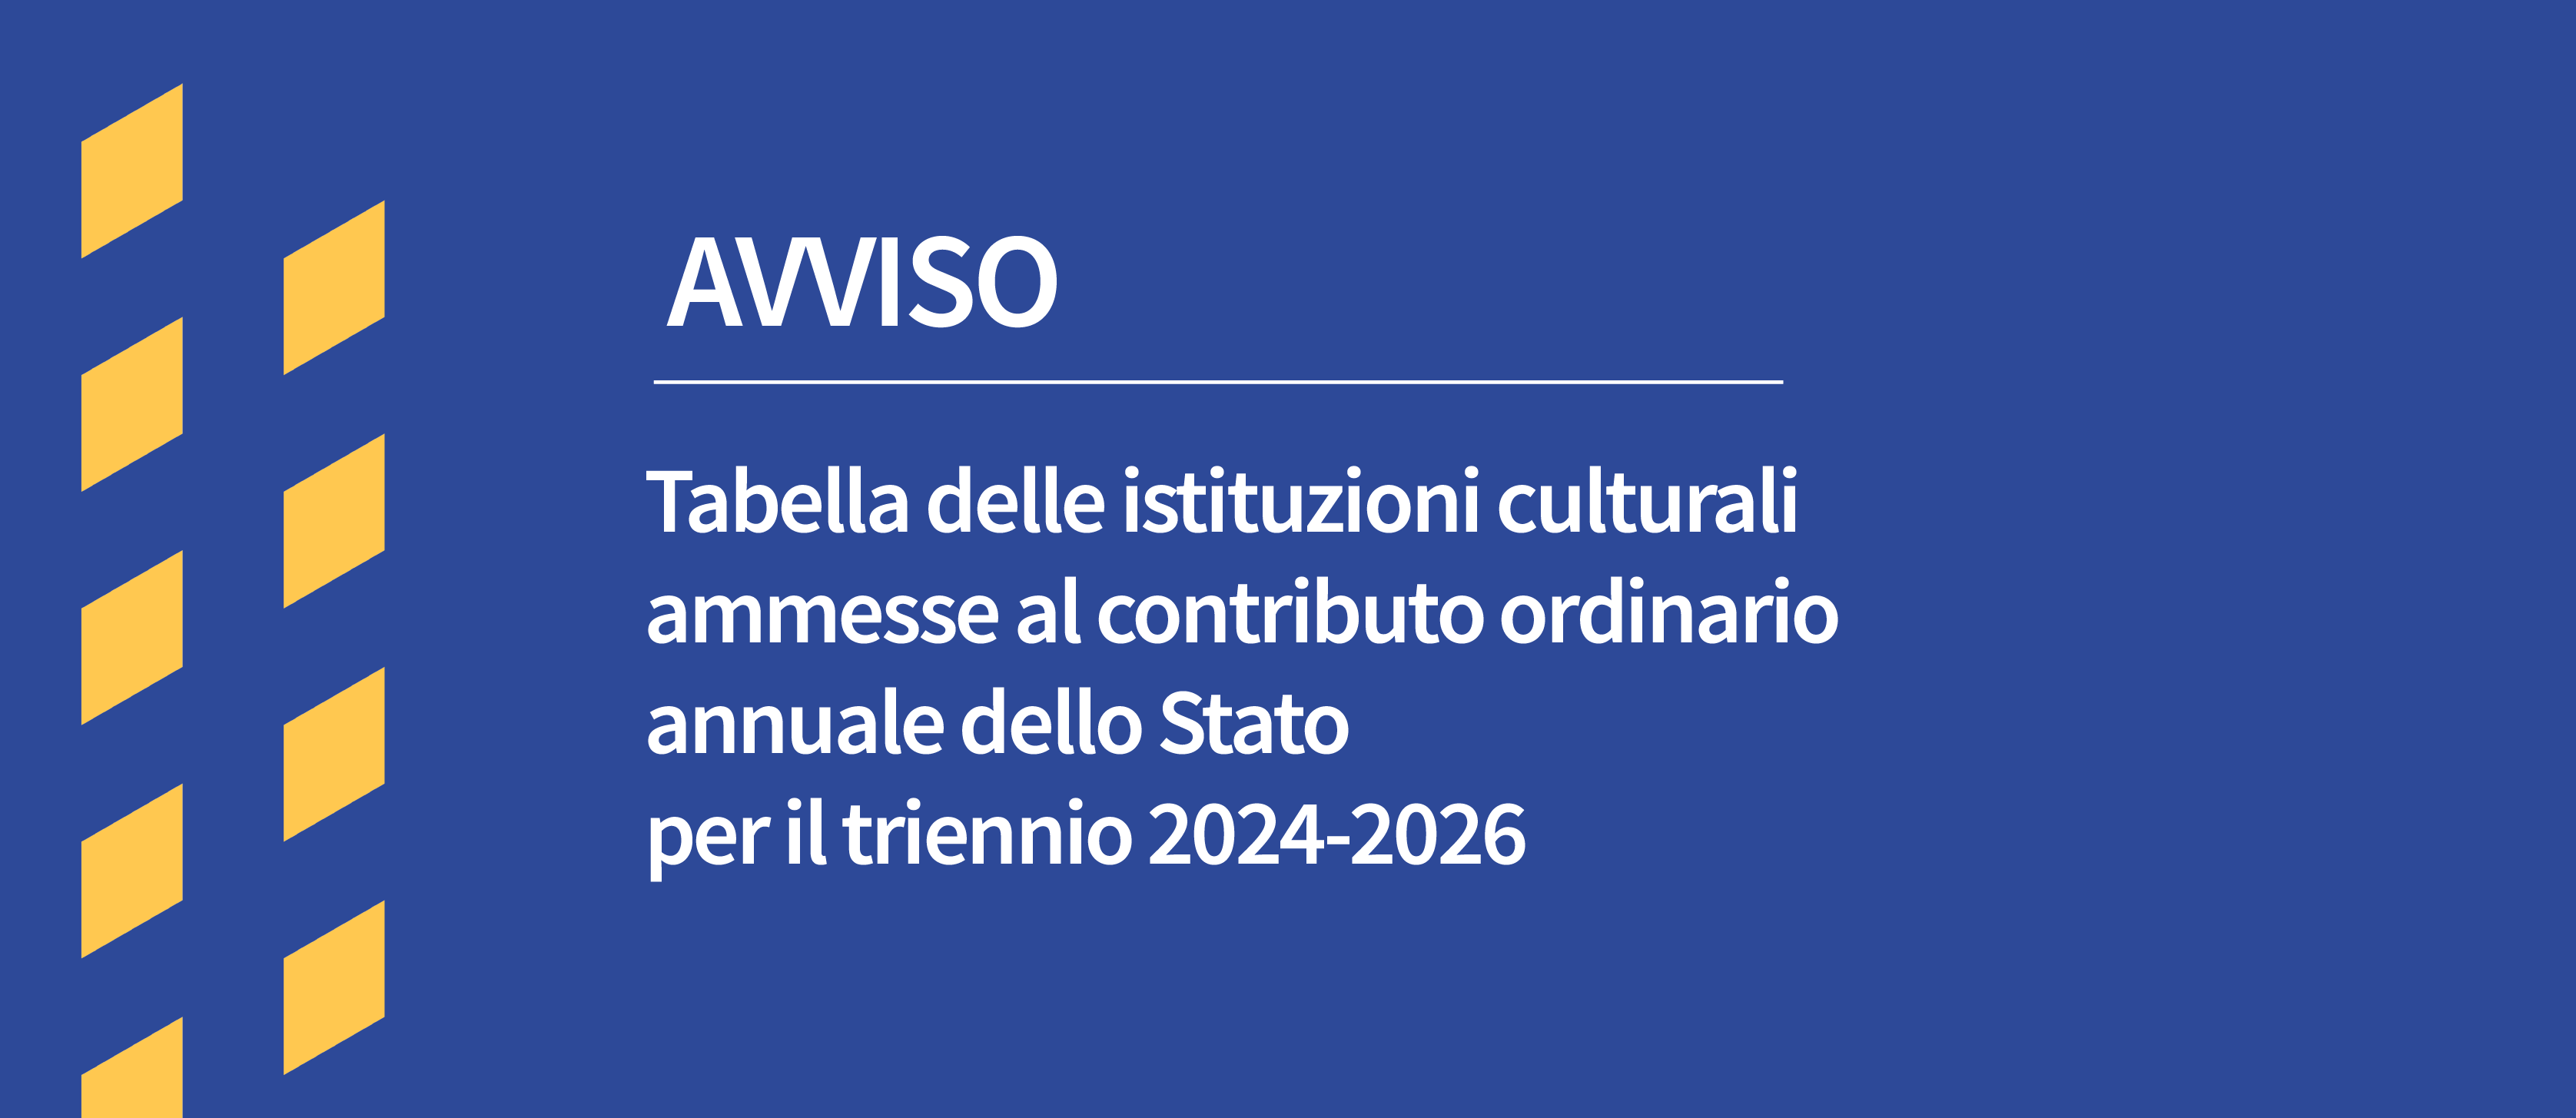 Avviso tabella istituti culturali contributi annuali triennio 2024-2026